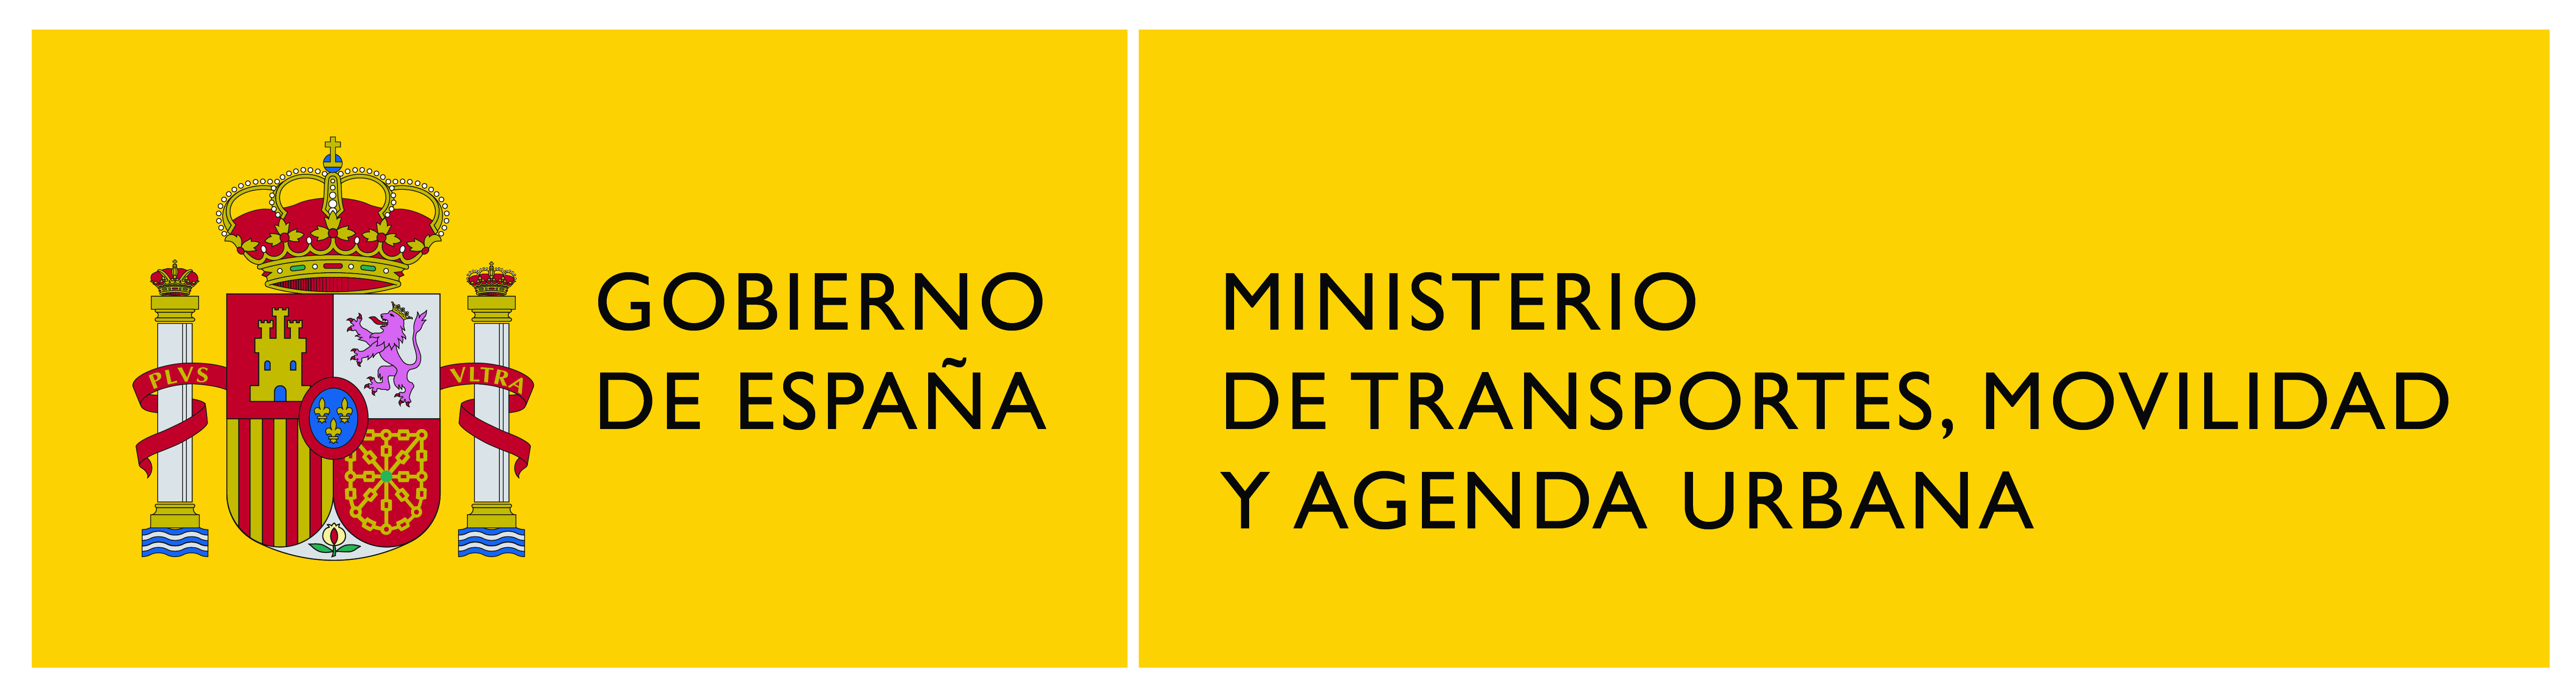 LOGO MINISTERIO DE TRANSPORTES MOVILIDAD Y AGENDA URBANA